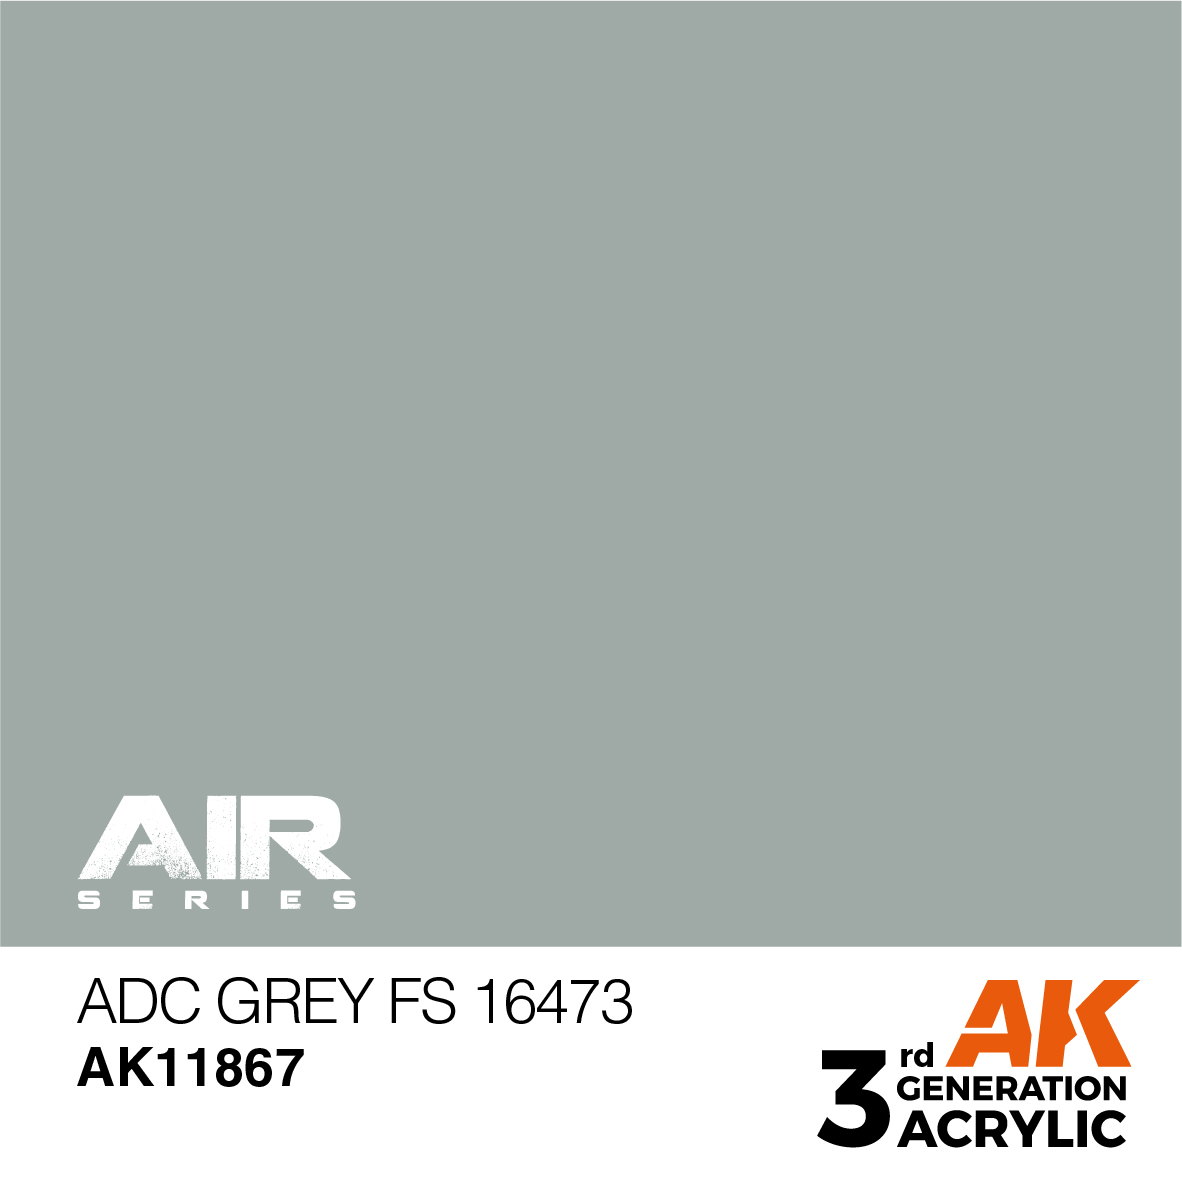 ADC Grey FS 16473 – AIR